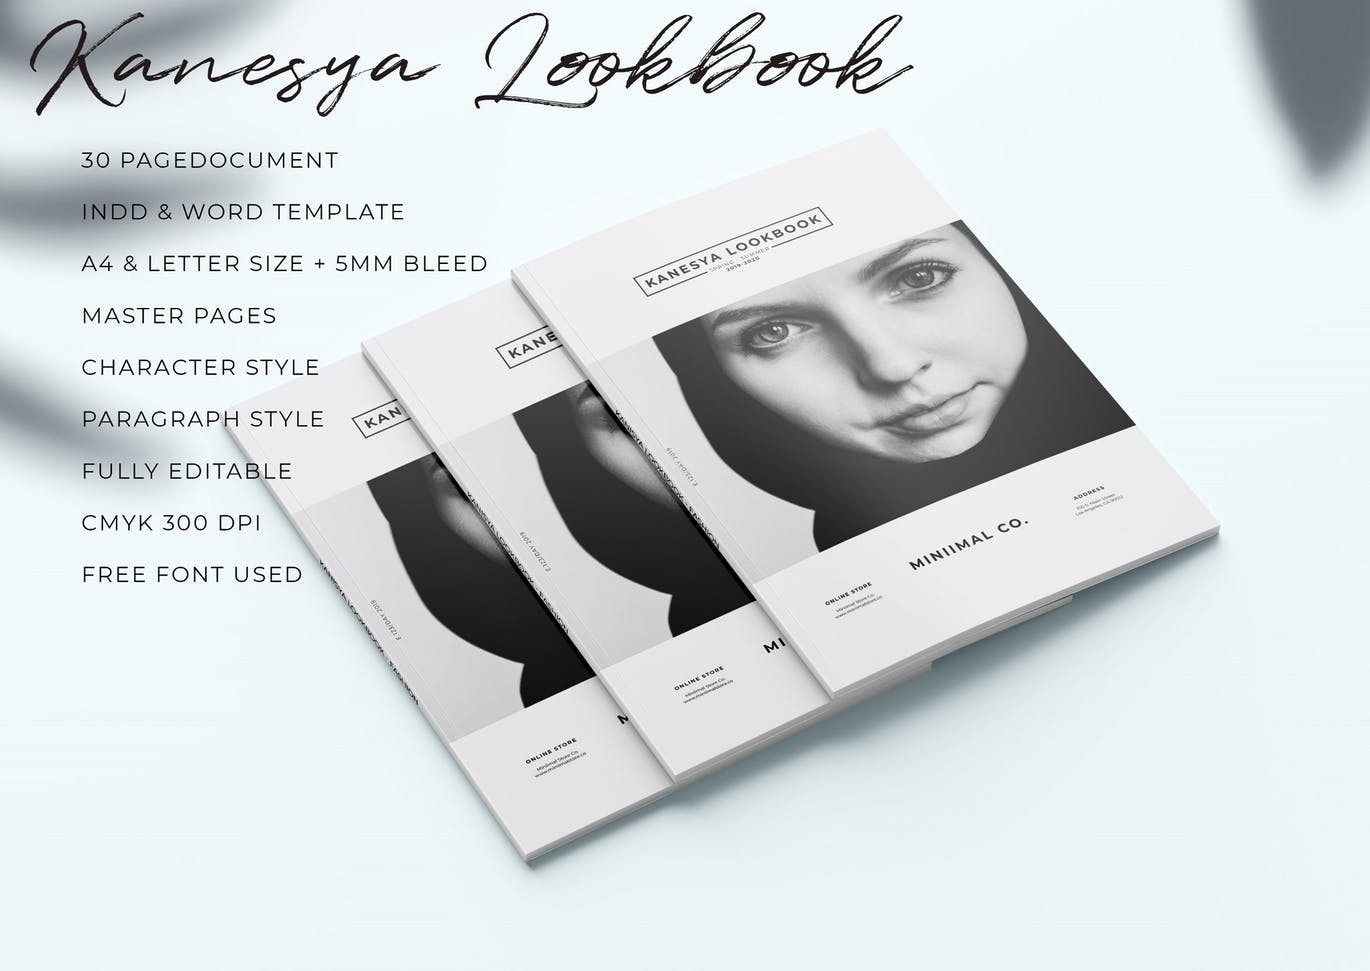 时尚/摄影/食品/生活方式/建筑主题使用手册画册设计模板 Lookbook插图1